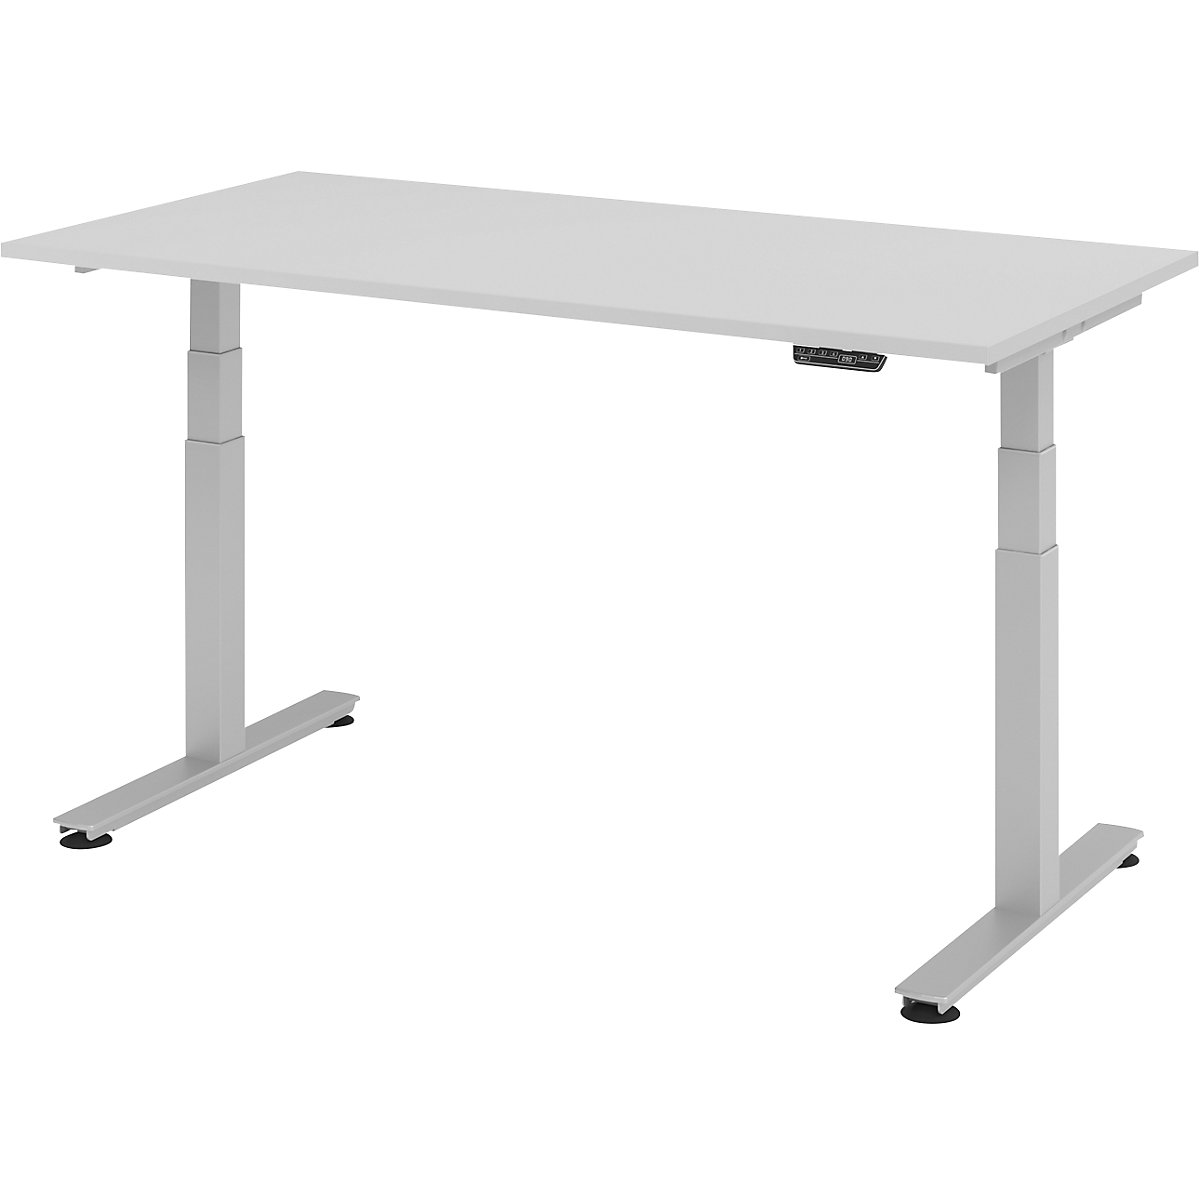 Sta-bureautafel, elektrisch in hoogte verstelbaar UPLINER-2.0, recht, b x d = 1600 x 800 mm, lichtgrijs-18